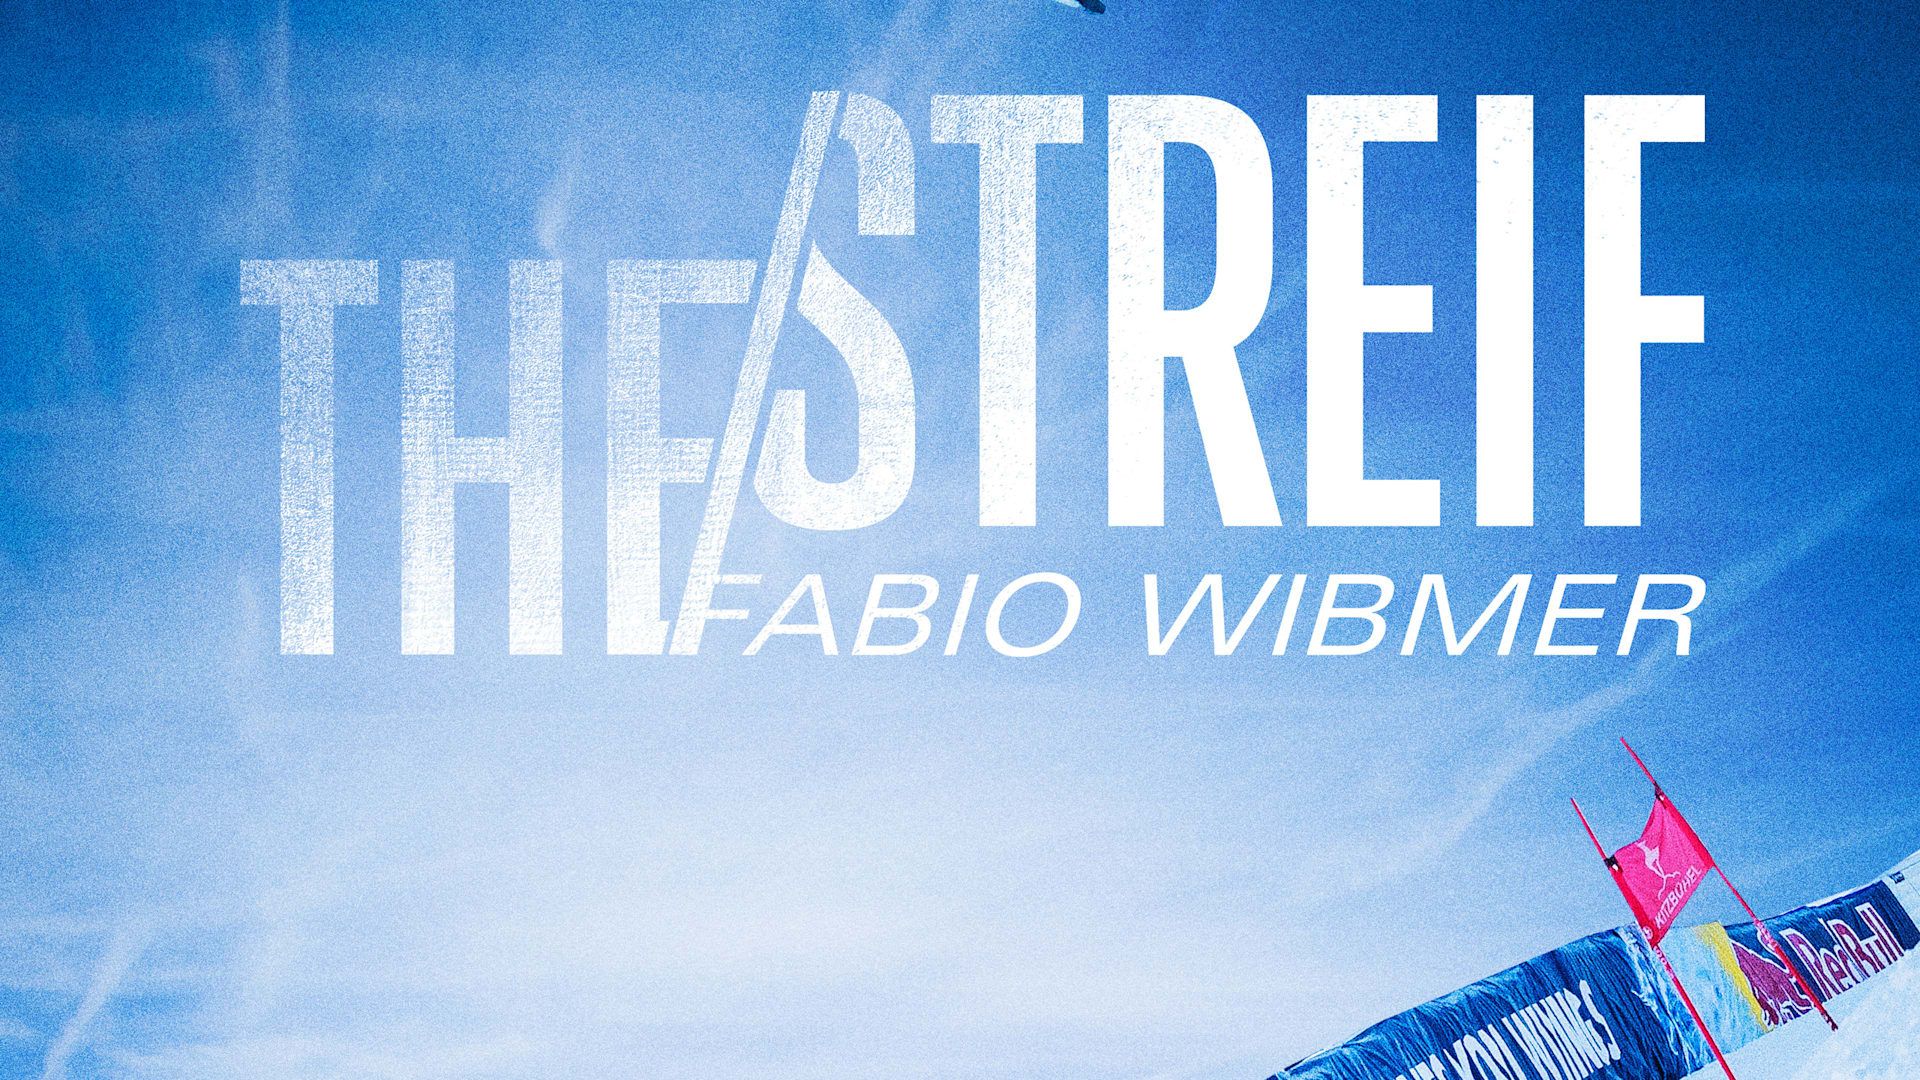 The Streif – Fabio Wibmer